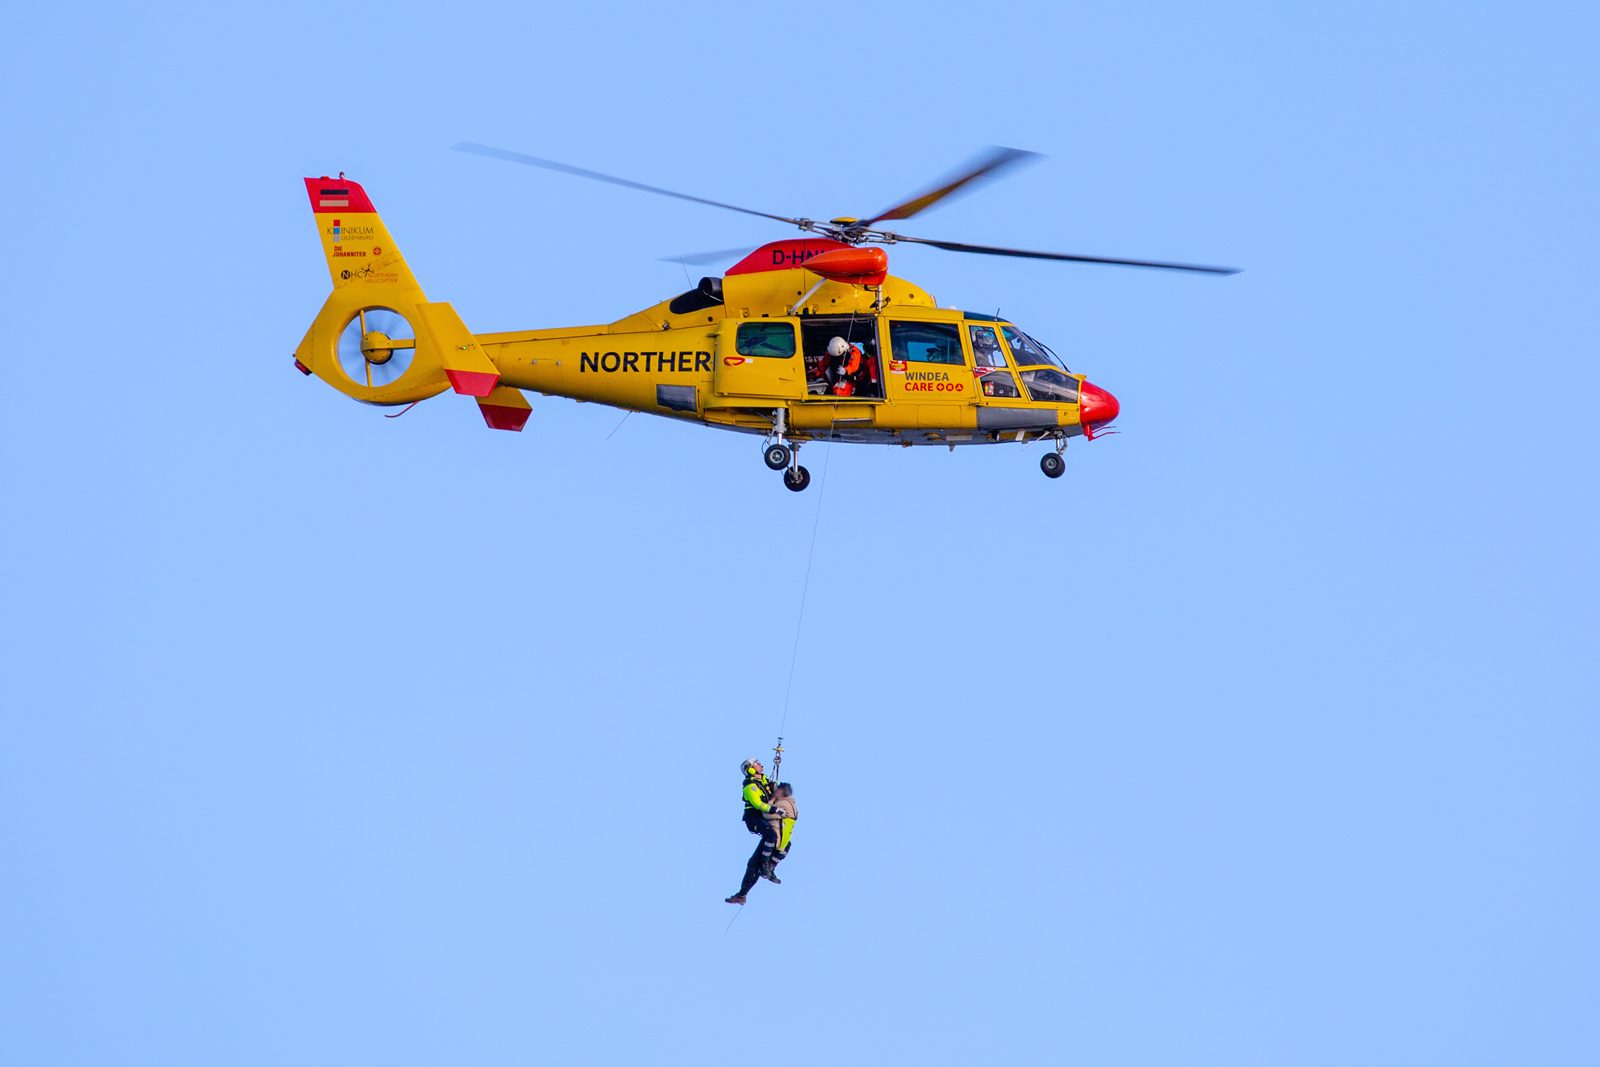 Rettungshubschrauber der Northern HeliCopter GmbH (D-HNHA) kam hier scheinbar nicht zum Übungseinsatz nahe der Piratenschlucht des Nationalparks Jasmund. - 03.10.2022
